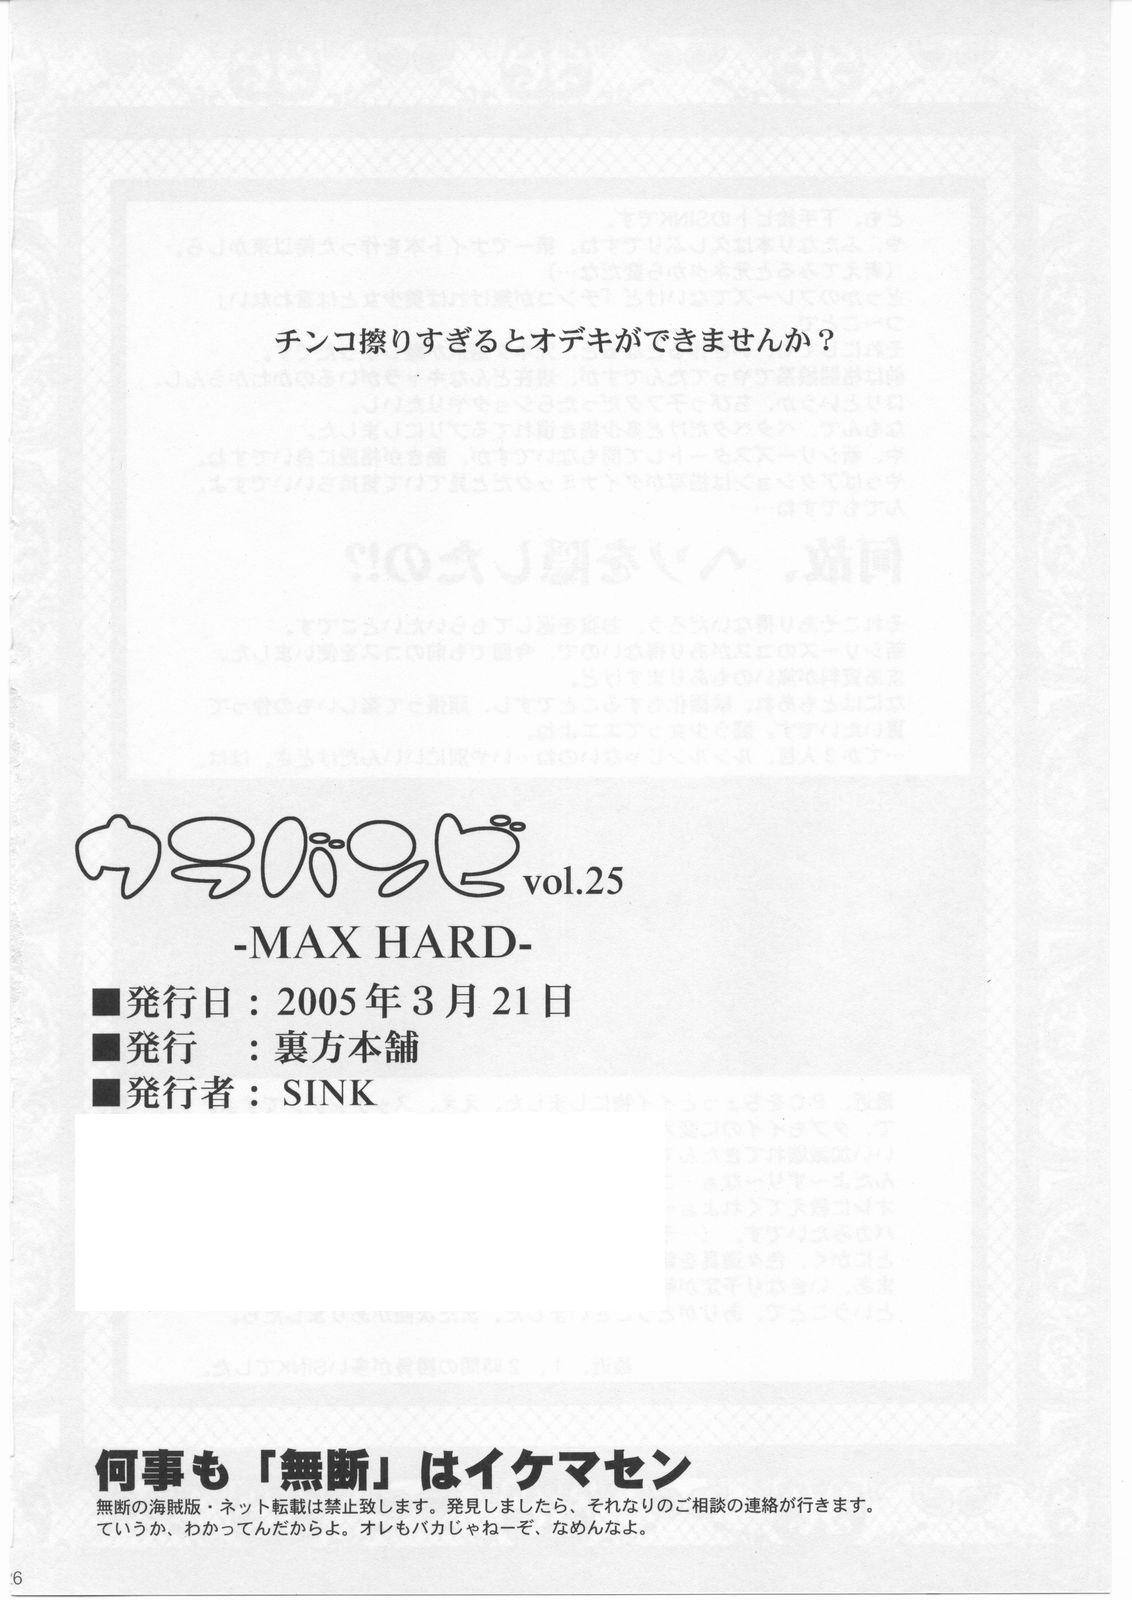 Urabambi Vol. 25 - Max Hard 24